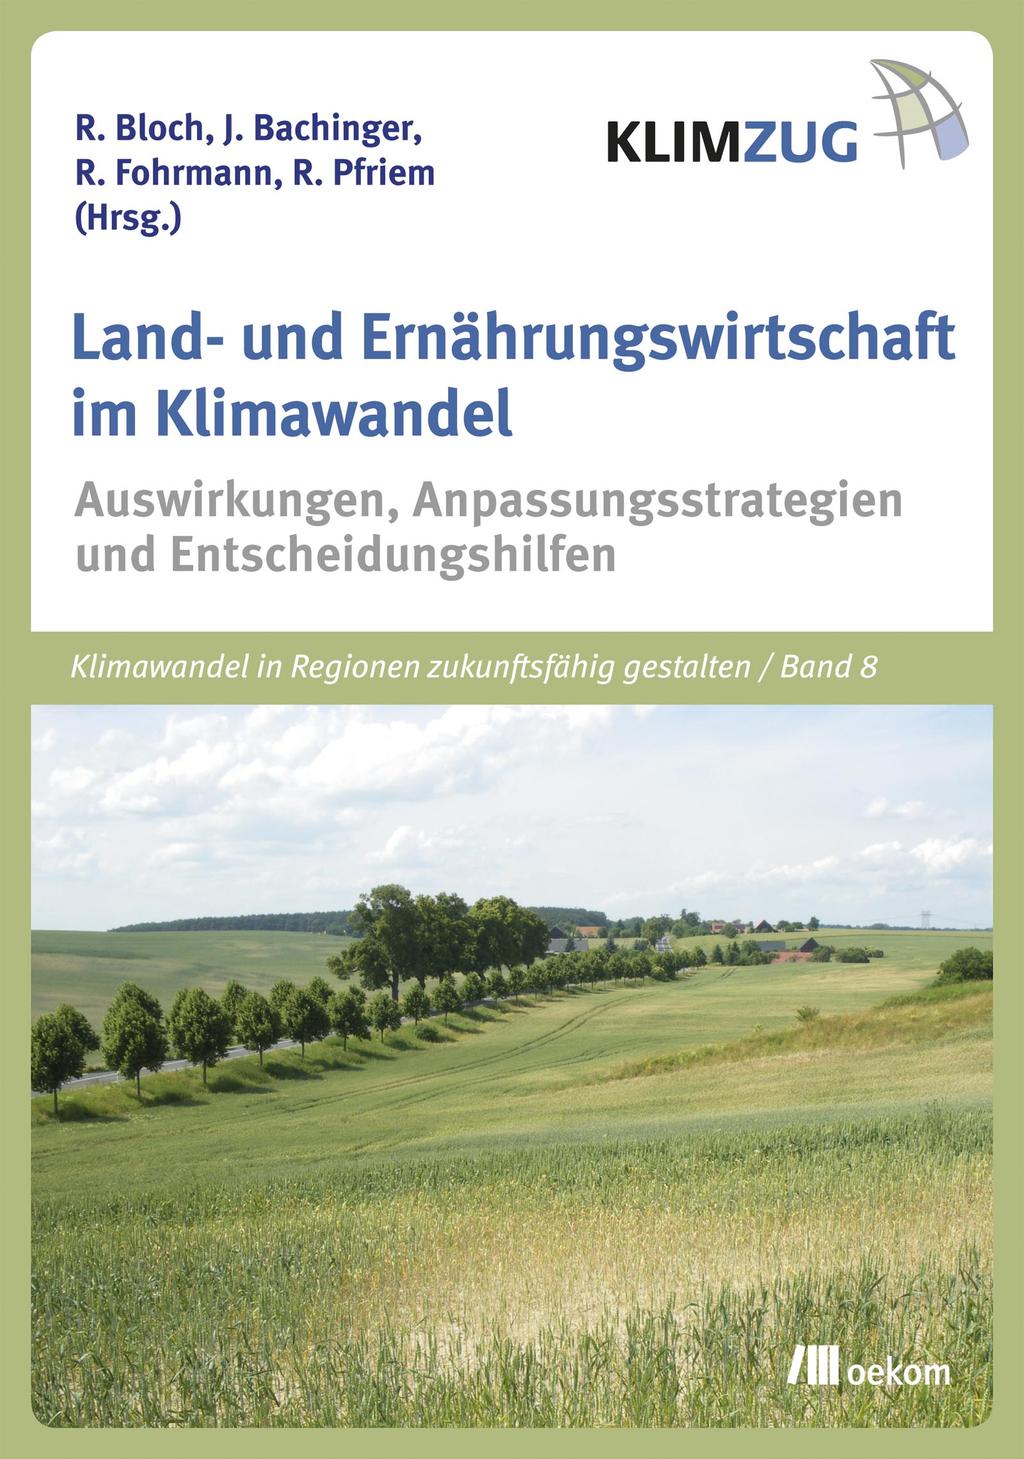 Anpassungsstrategien und Entscheidungshilfen ISBN 978-3-86581-702-0 397